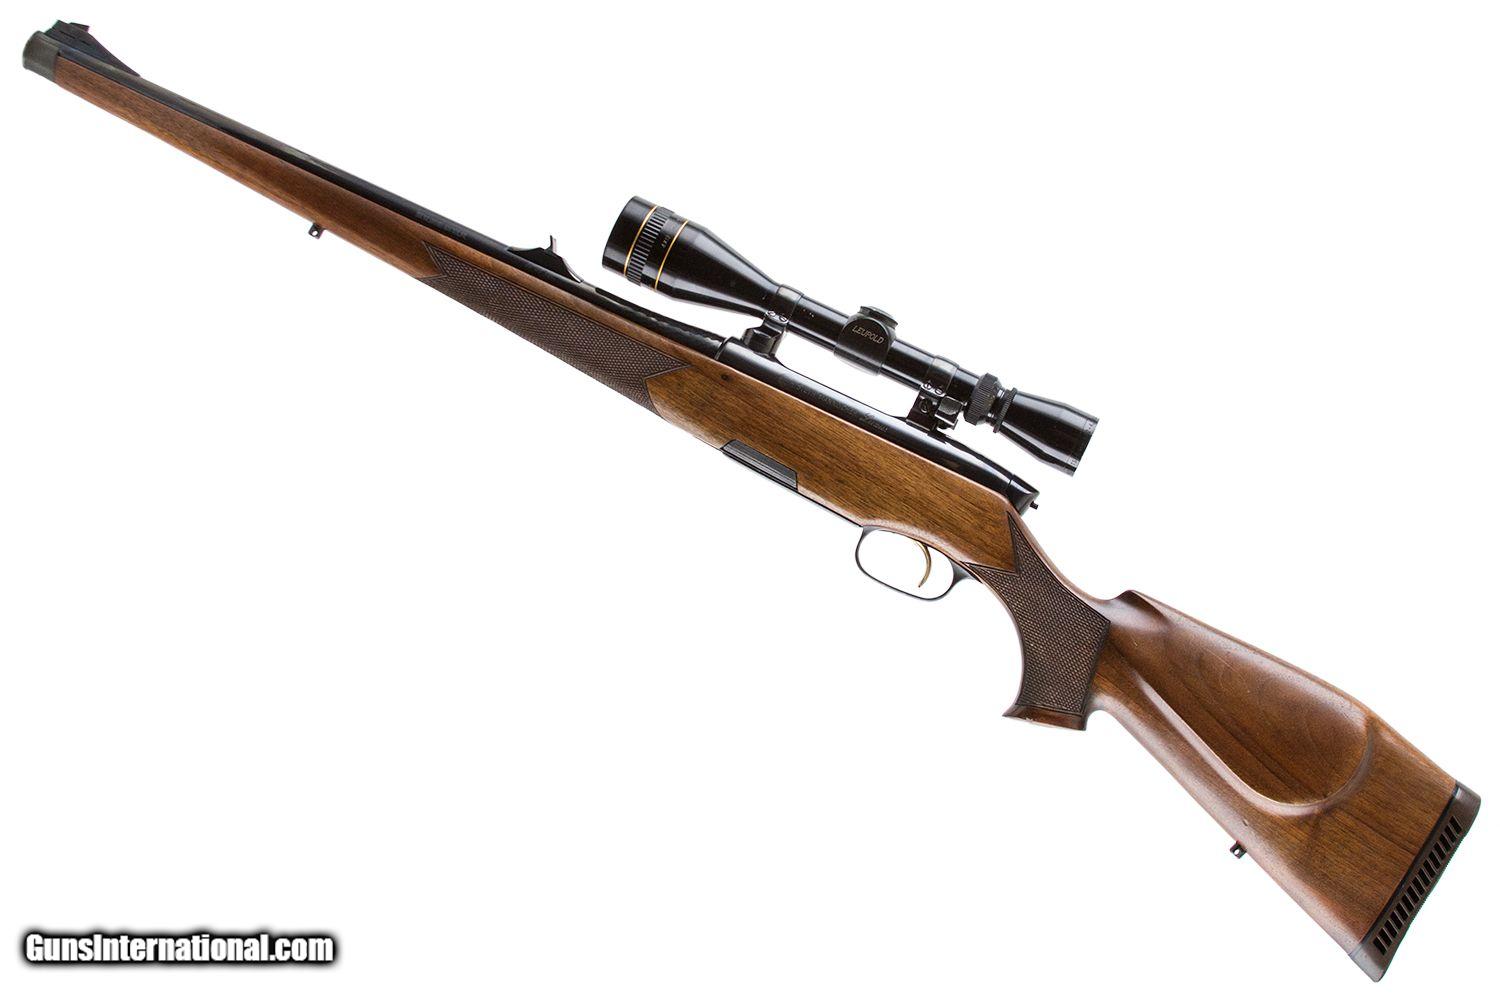 magazine falls out of steyr mannlicher luxus rifle